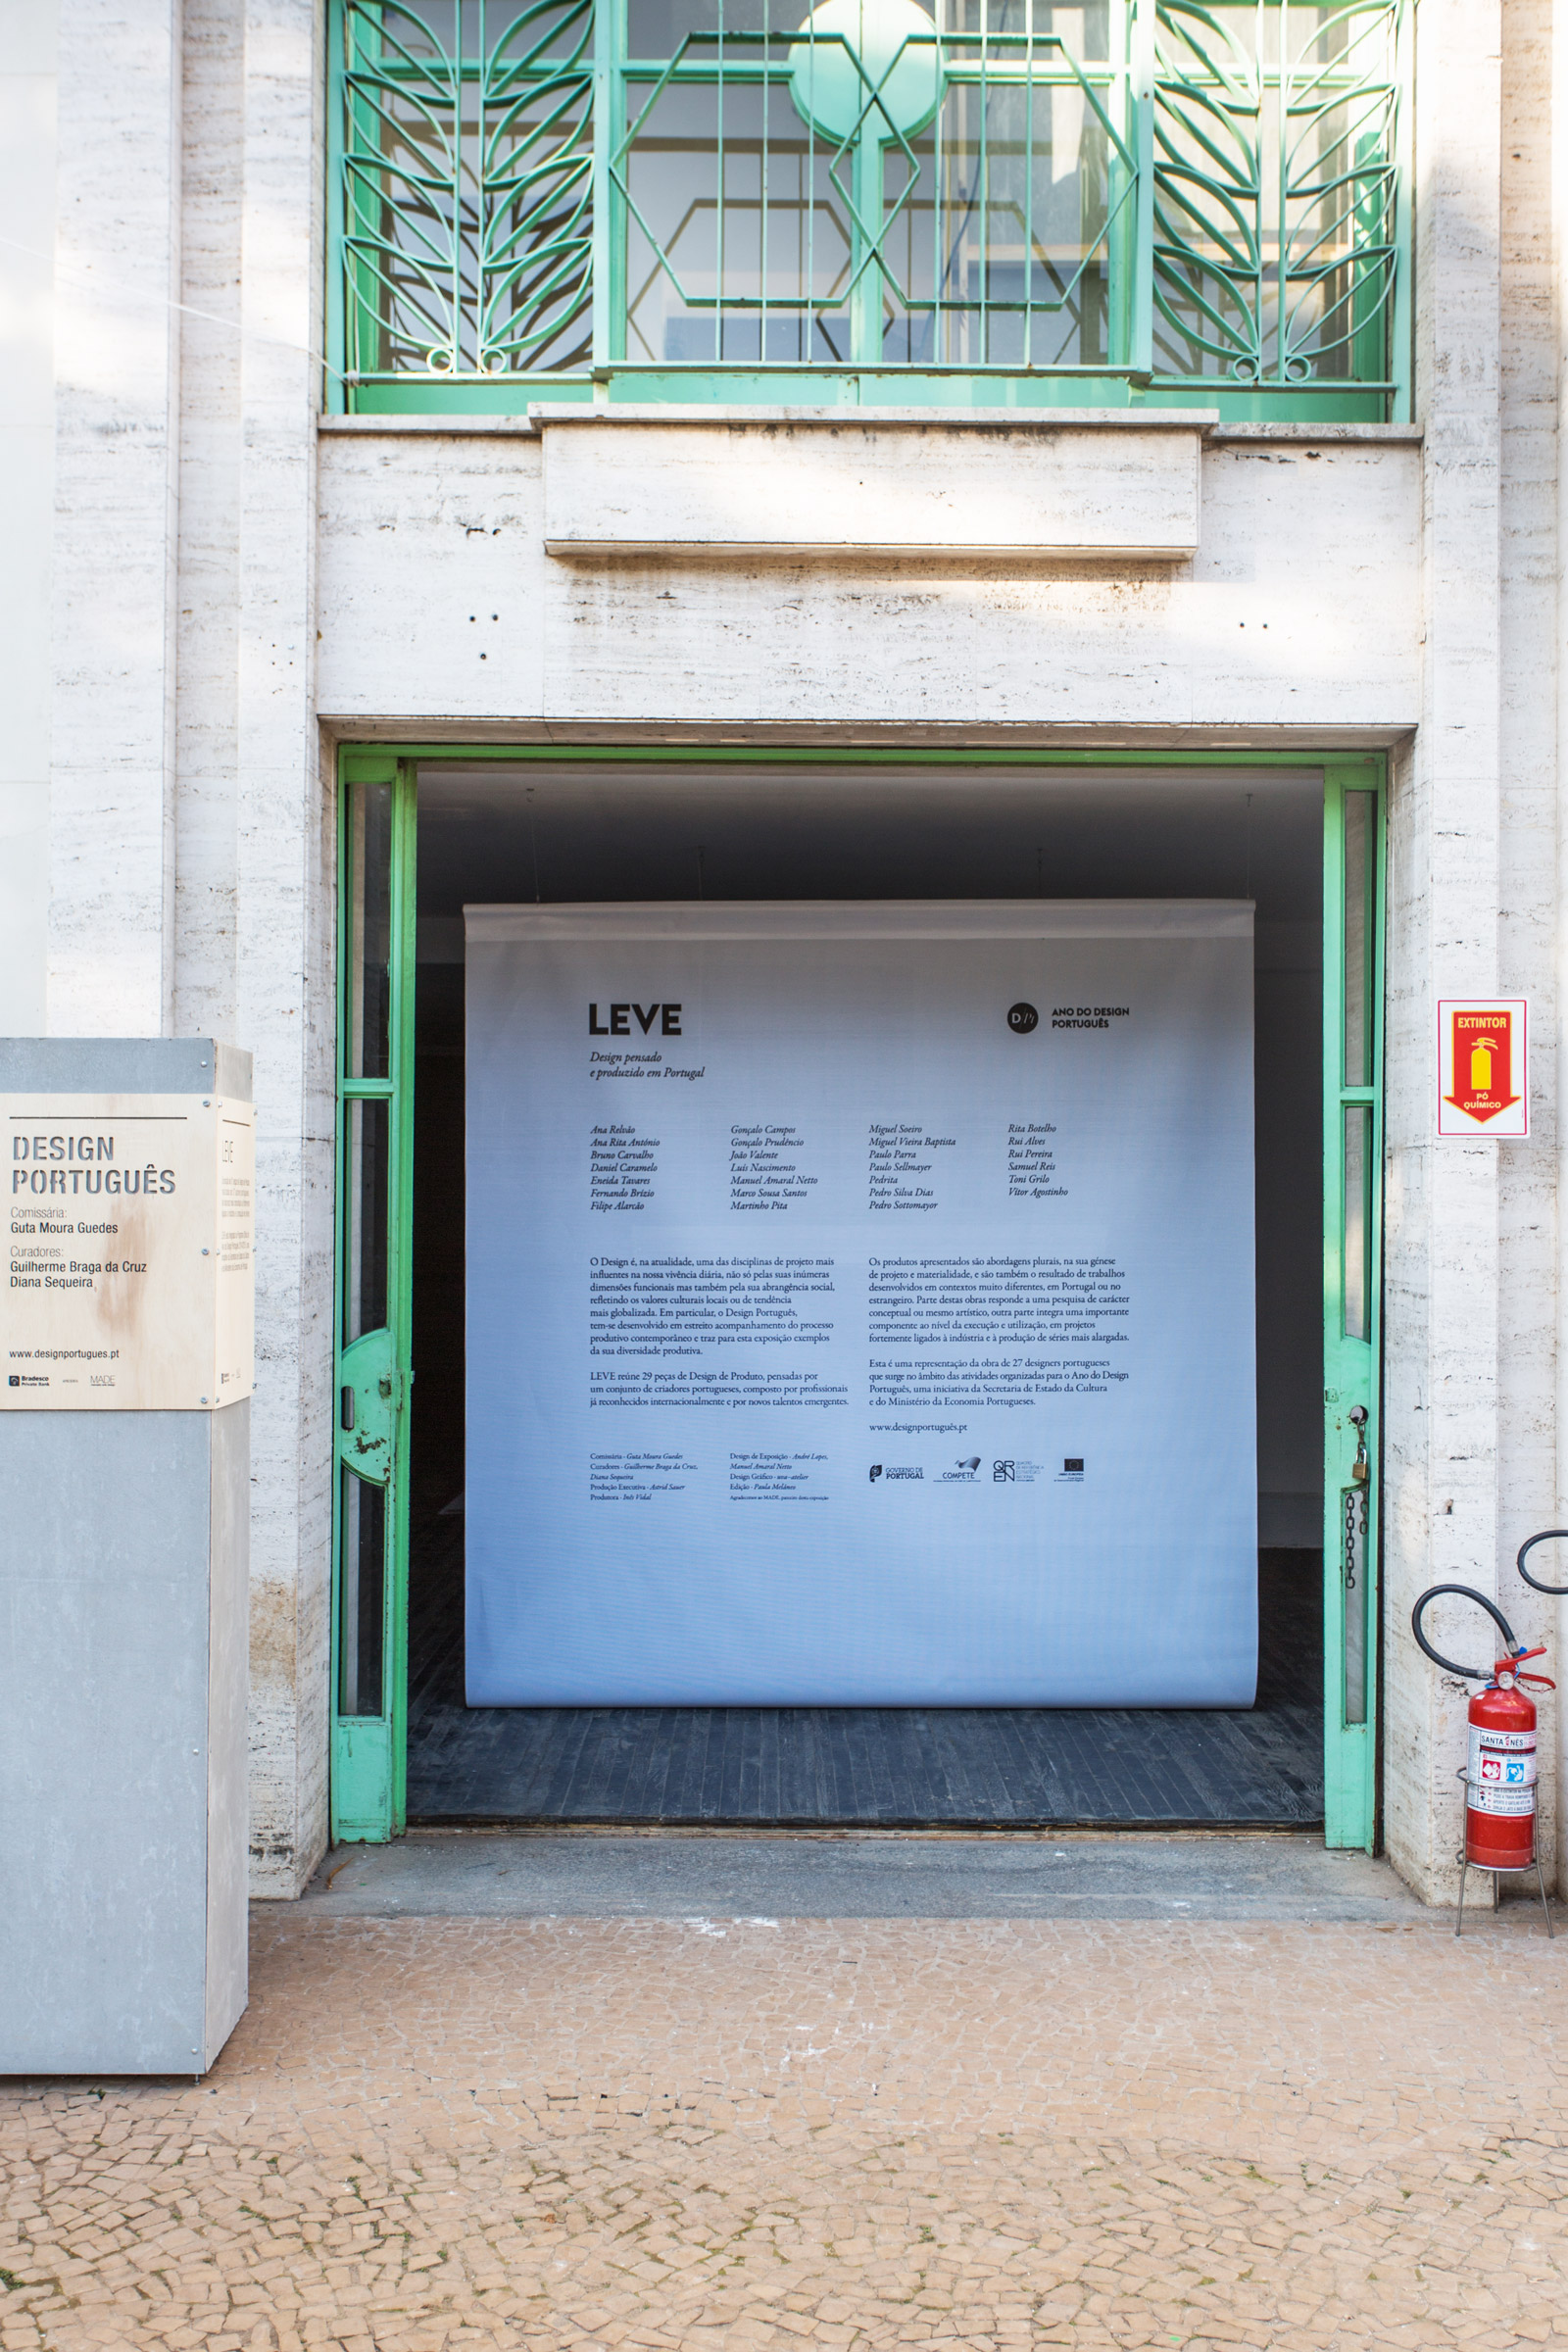 Leve ⟐ Exhibition entrance